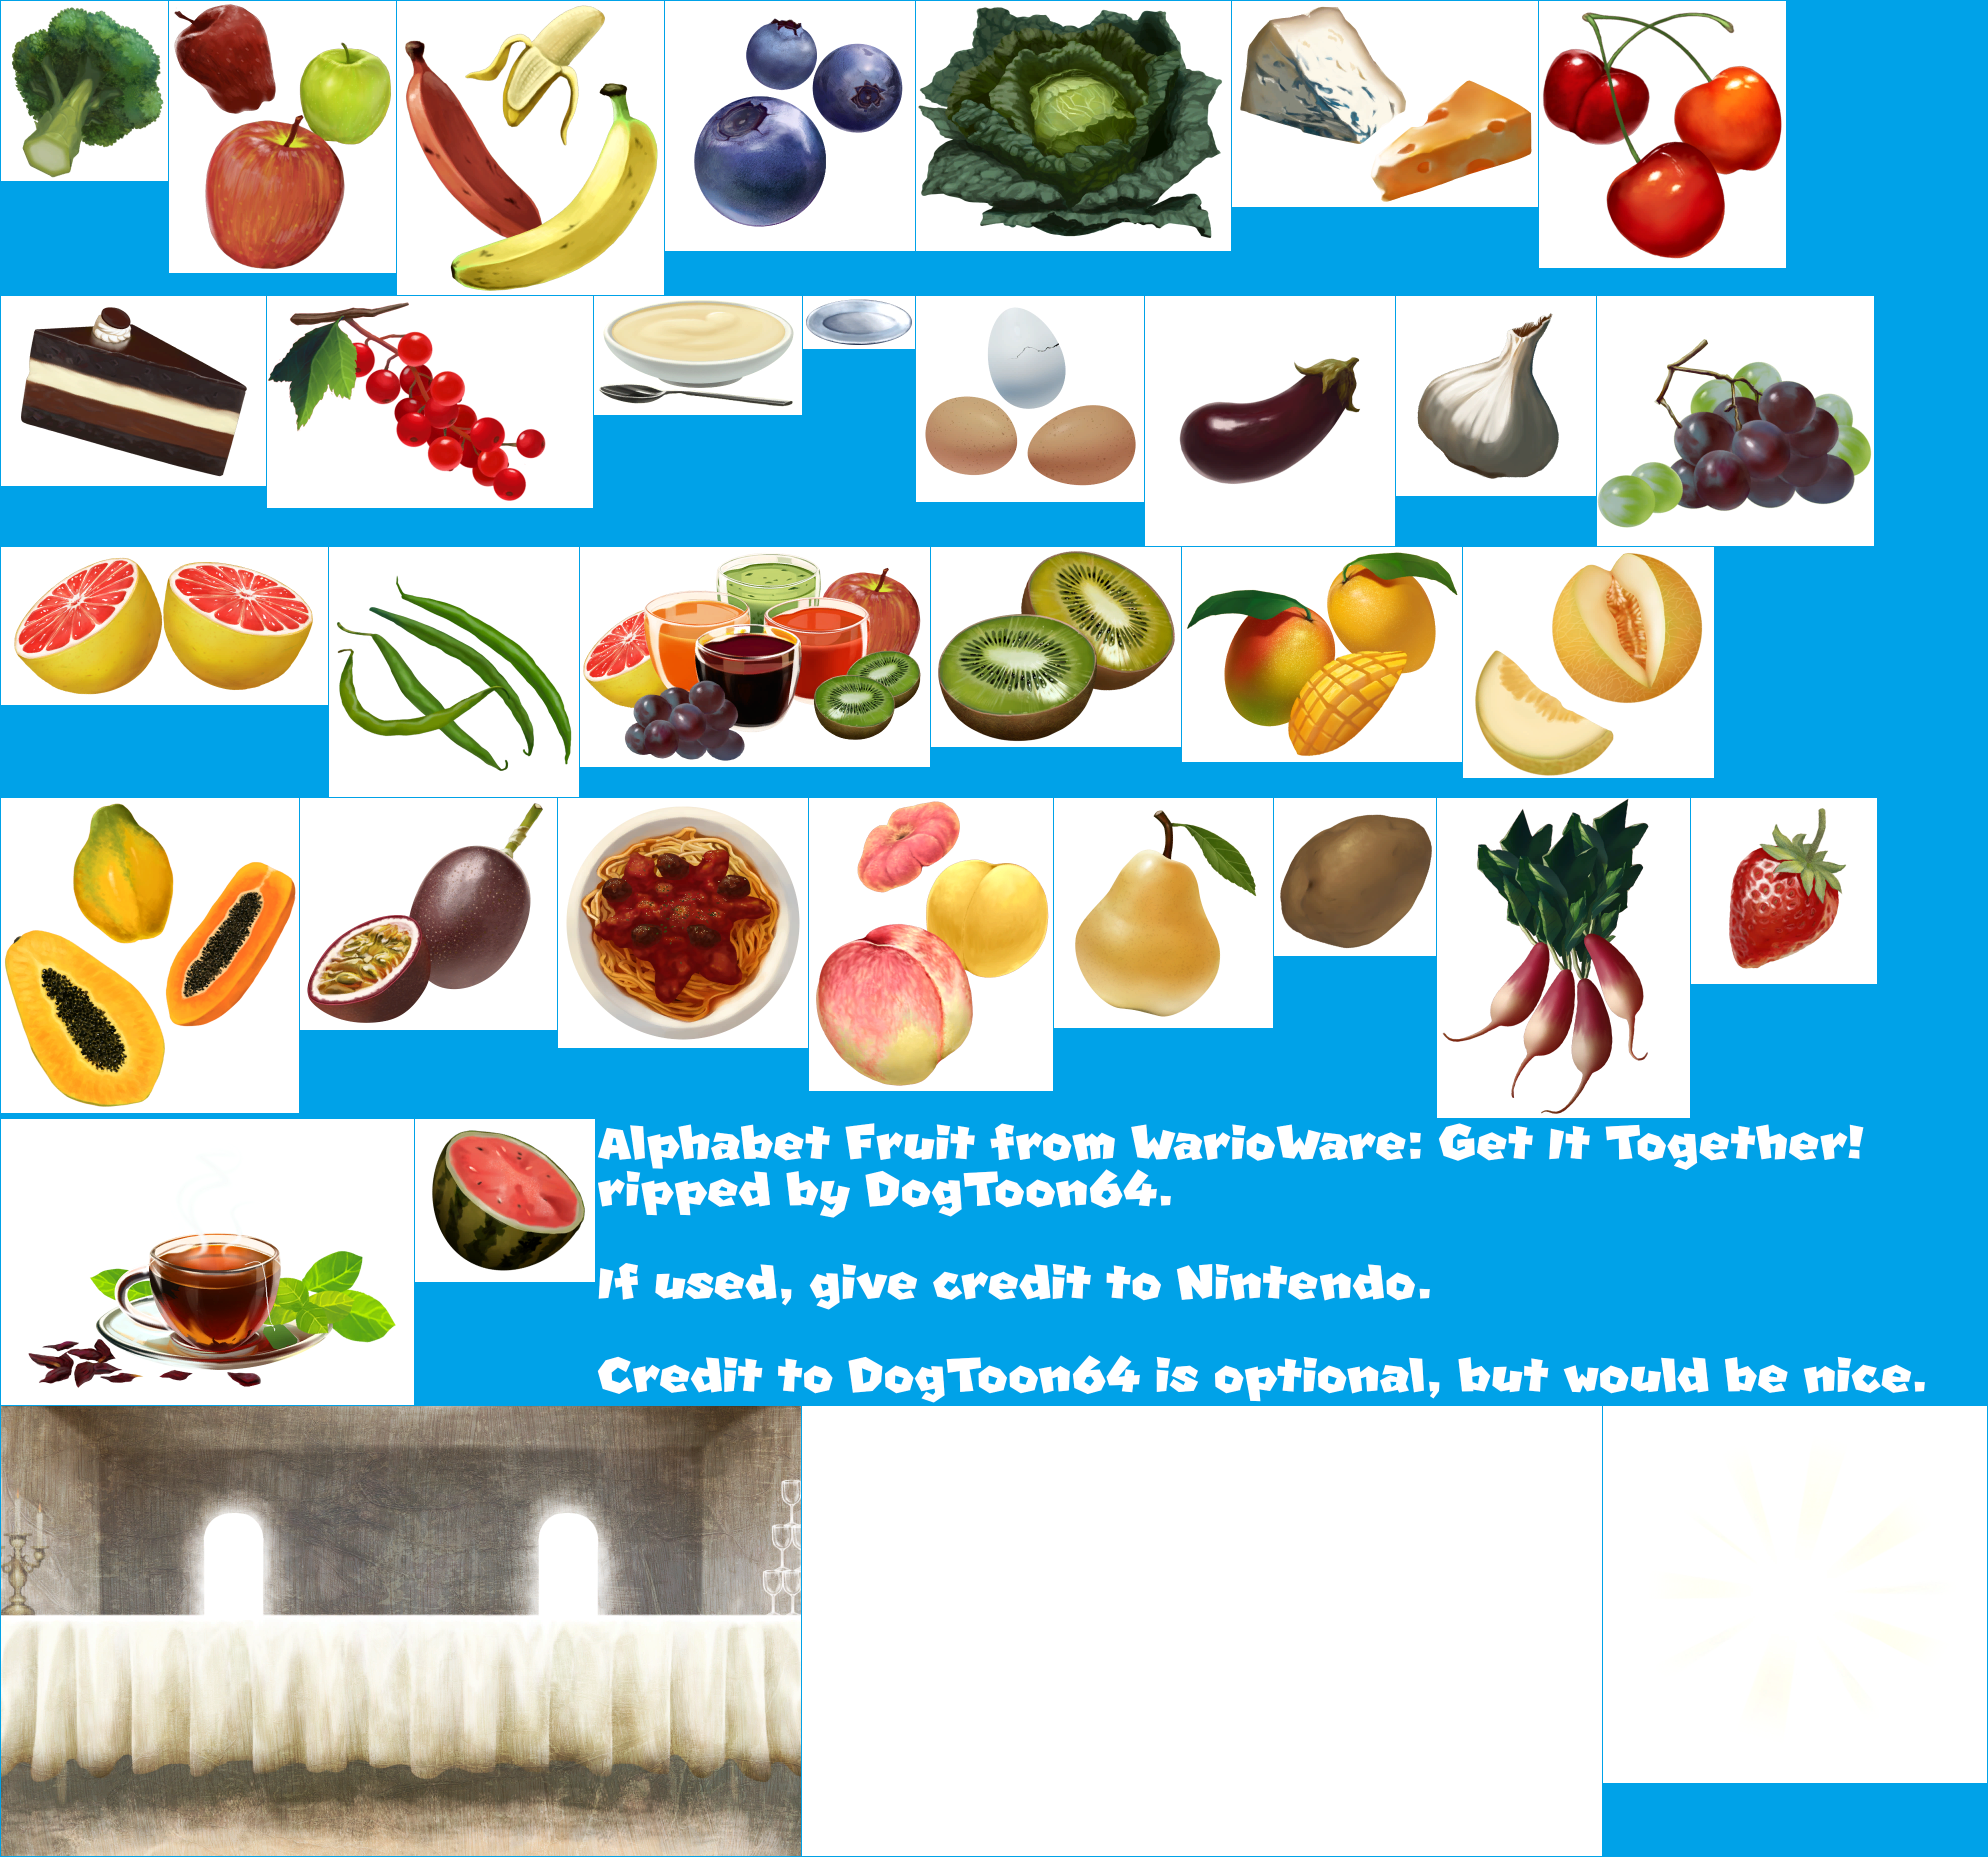 WarioWare: Get It Together! - Alphabet Fruit